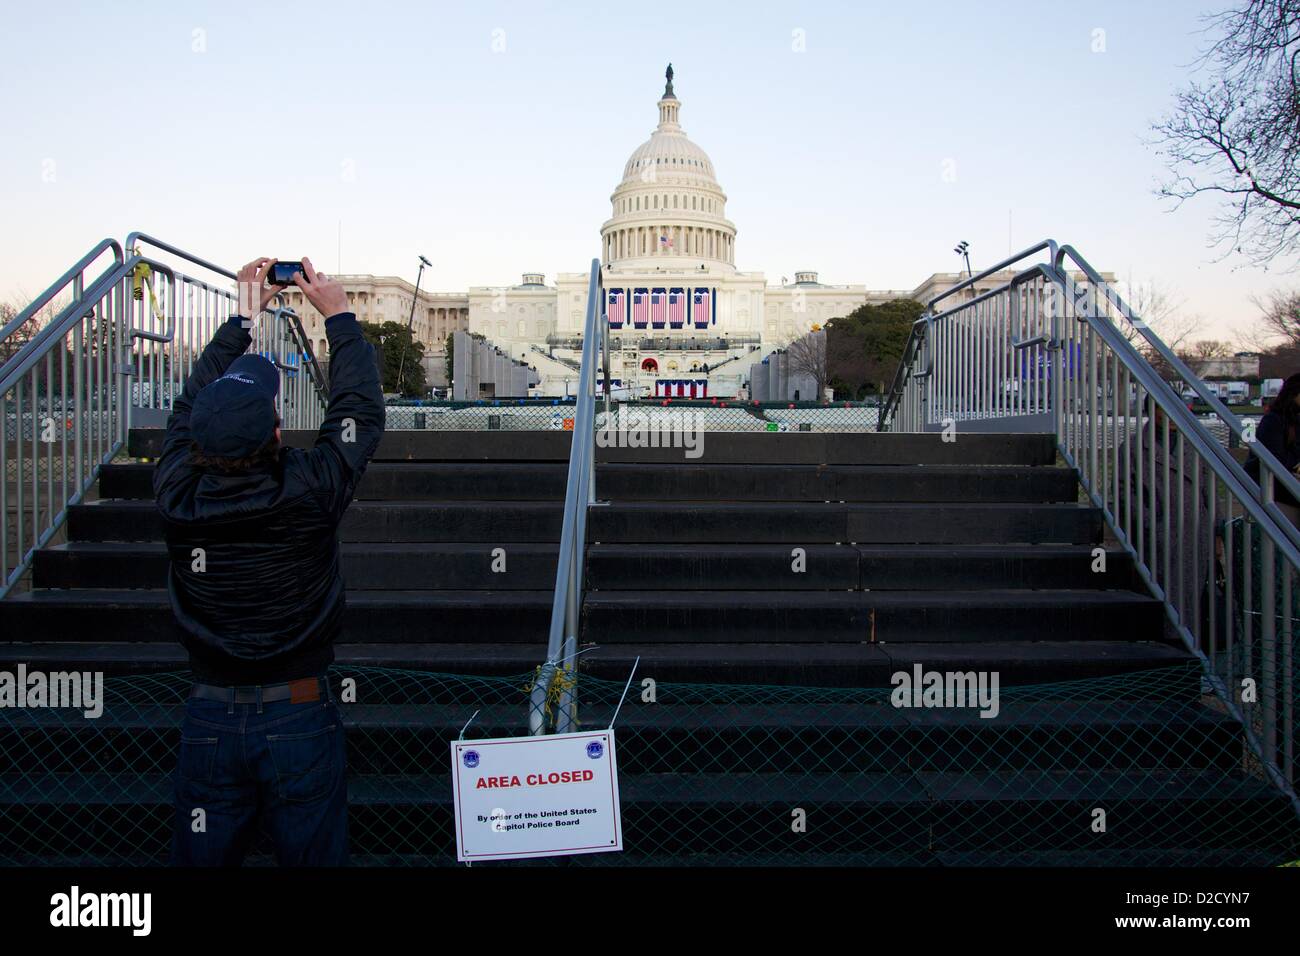 Gennaio 20, 2013, Washington DC. Un uomo prende una foto dell'U.S. Capitol da una barriera in una zona sicura. Sebbene la 57th cerimonia inaugurale è domani, il Presidente Obama è stato giurato in questa mattina a causa di una disposizione costituzionale che i presidenti essere giurato in prima di mezzogiorno il 20 gennaio. Foto Stock